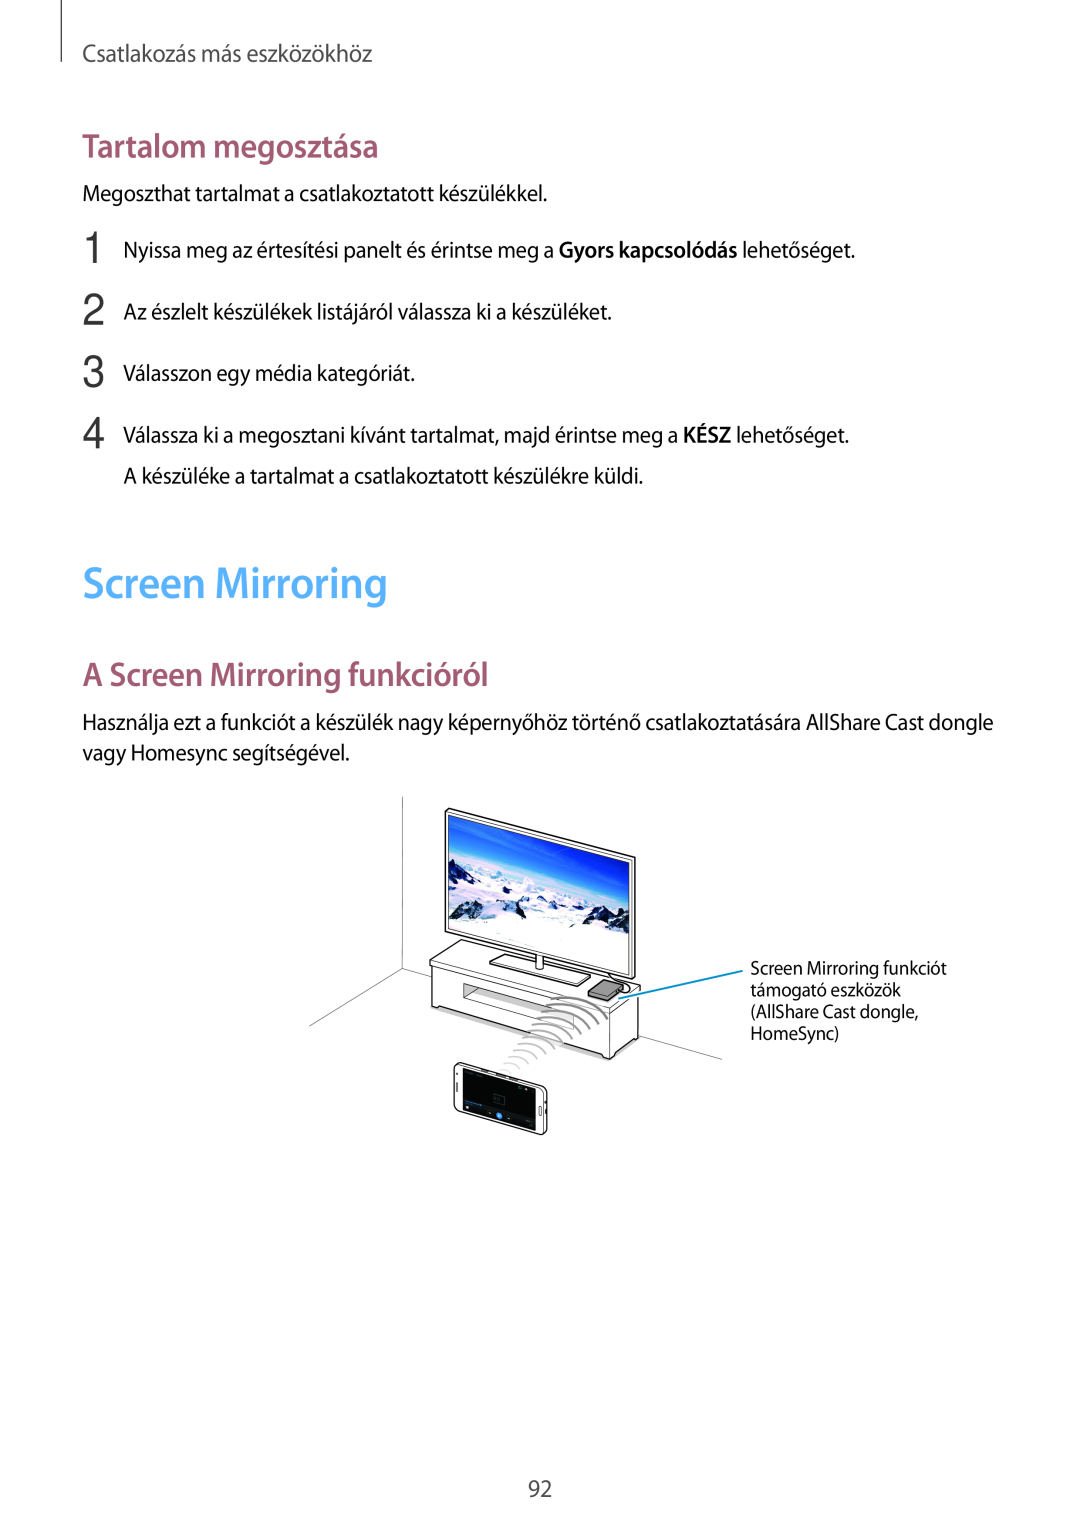 Samsung SM2A300FZWUXEH, SM-A300FZDUXEO Tartalom megosztása, A Screen Mirroring funkcióról, Csatlakozás más eszközökhöz 